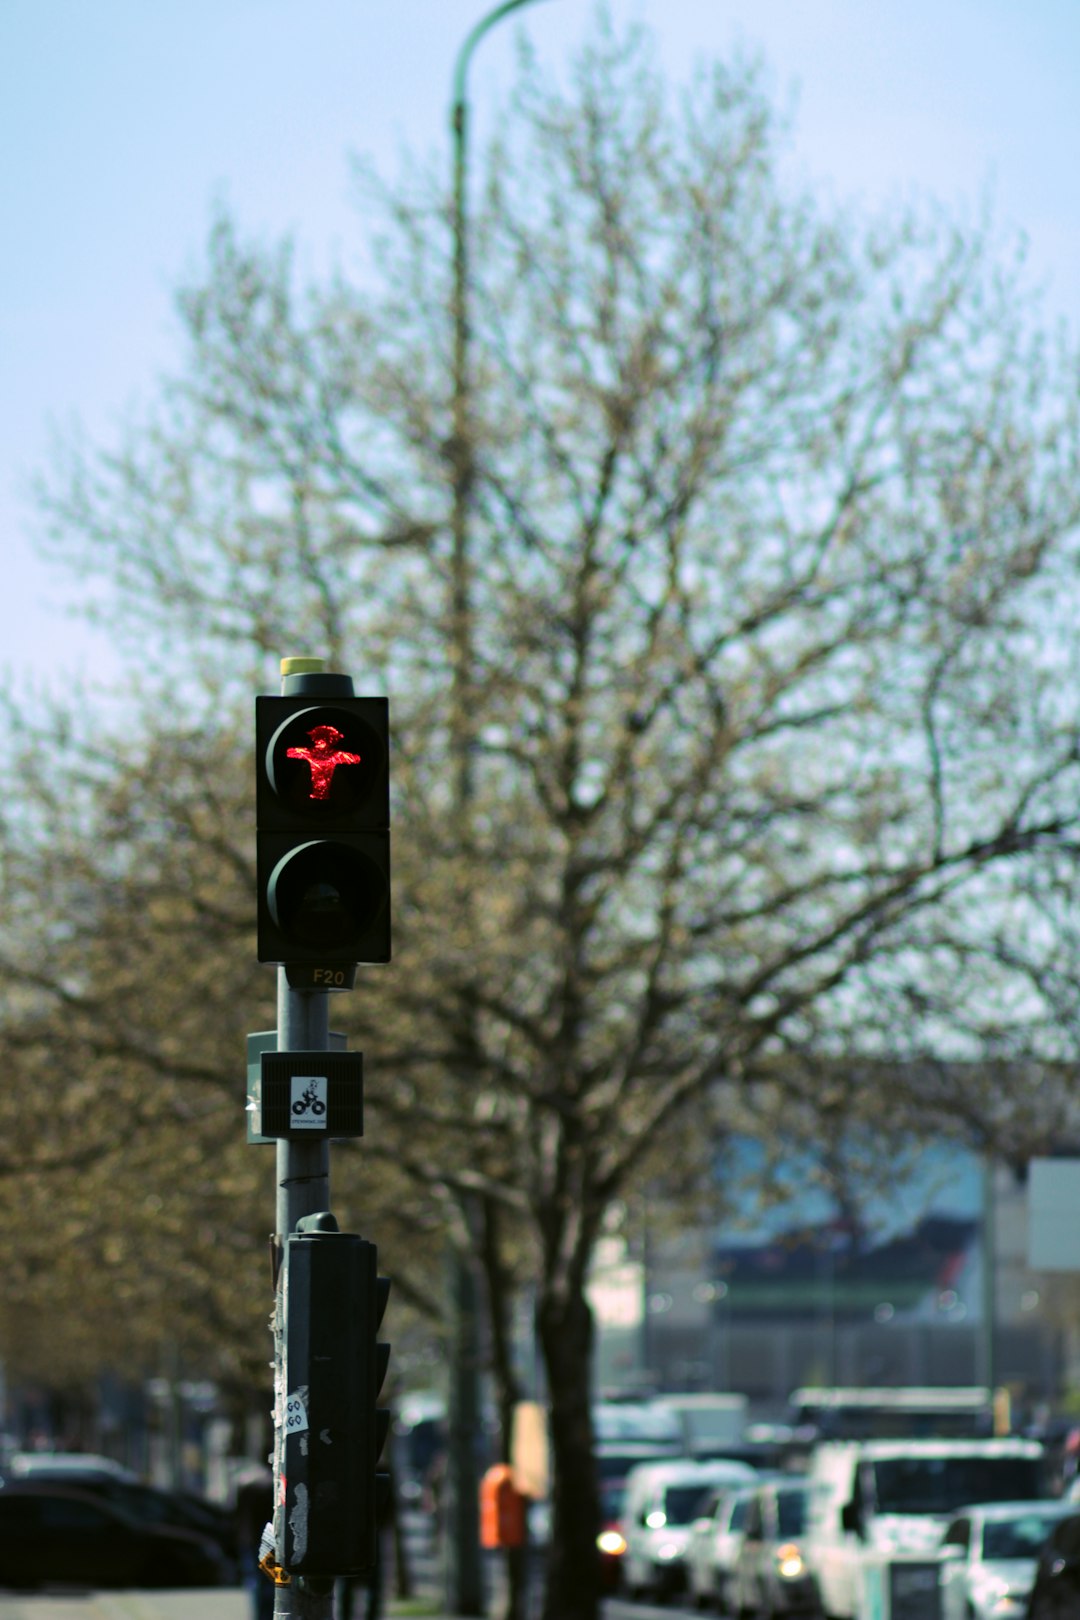 black traffic light on red light during daytime